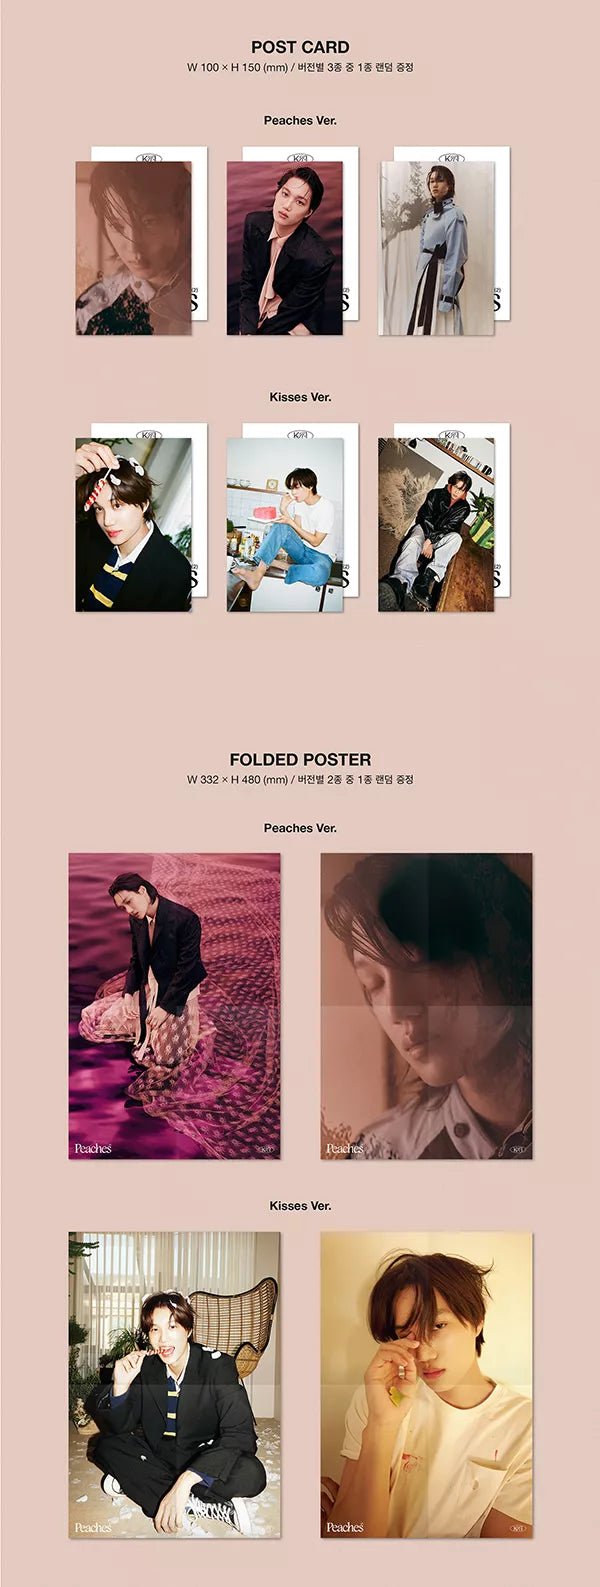 EXO's Kai releases his 2nd solo mini album 'Peaches